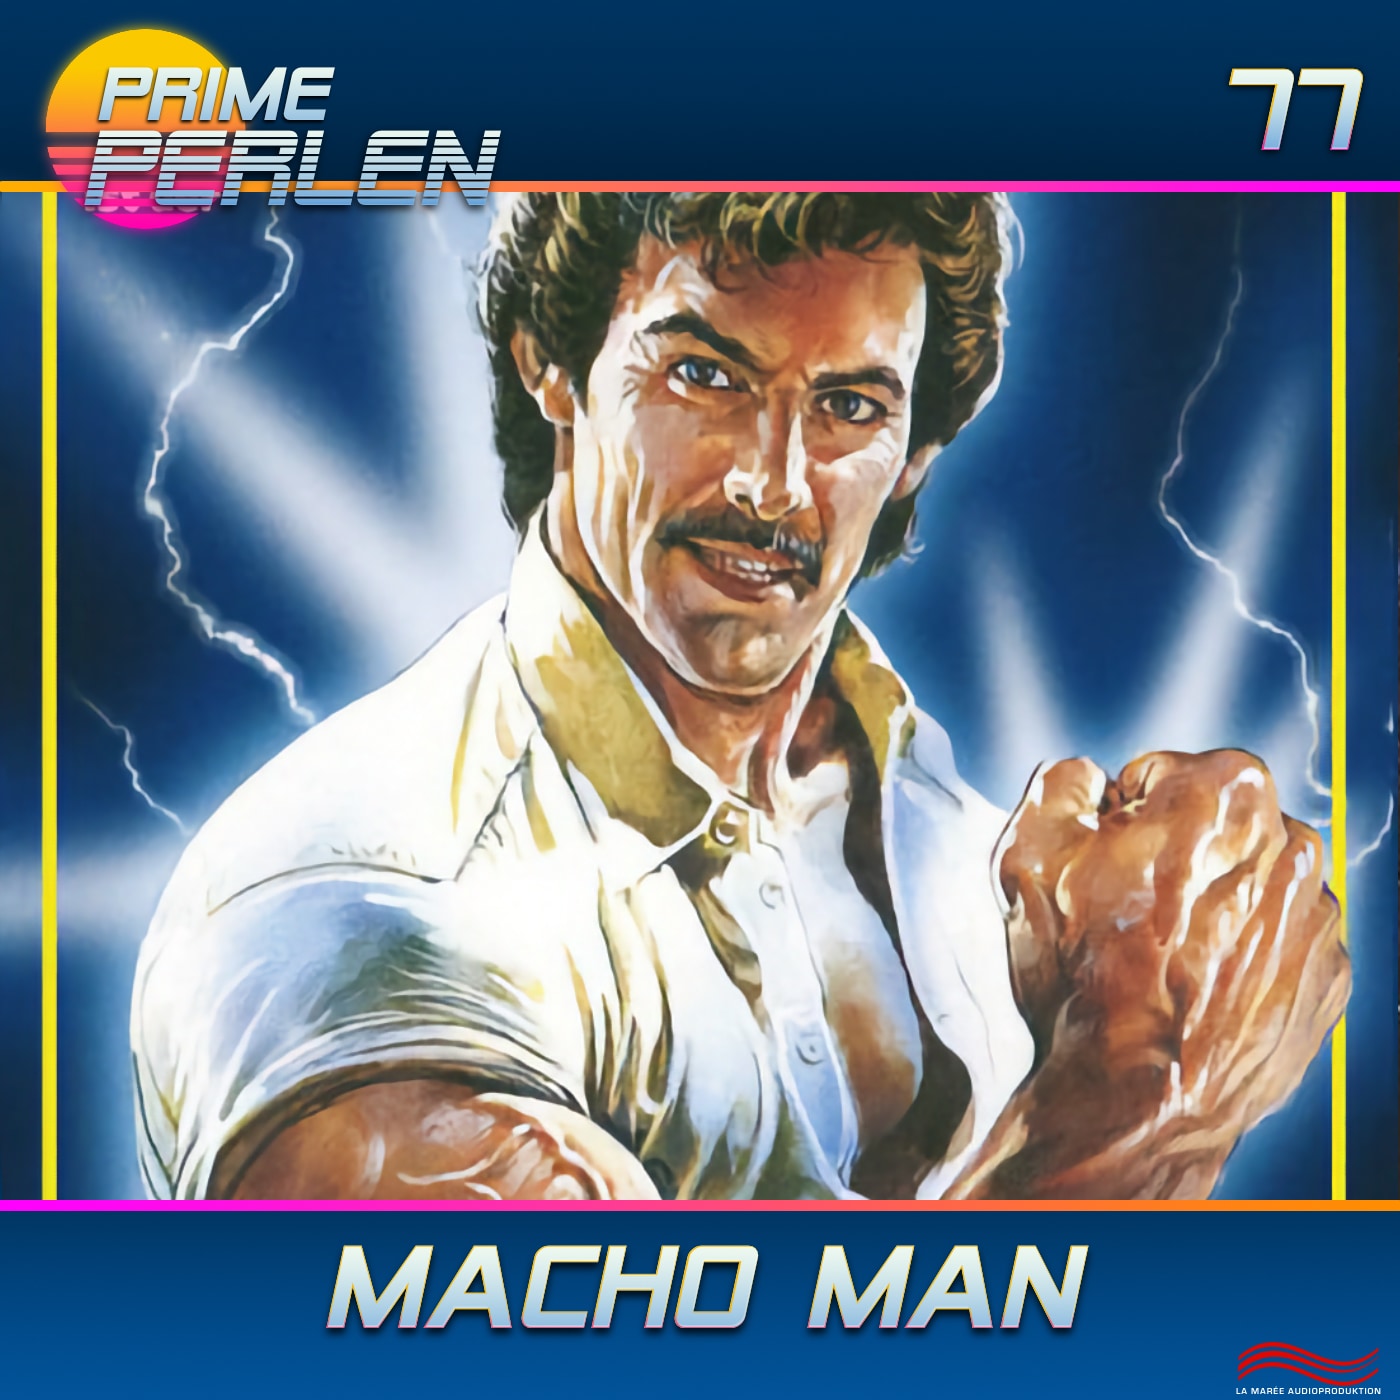 Prime Perlen #77 – Macho Man